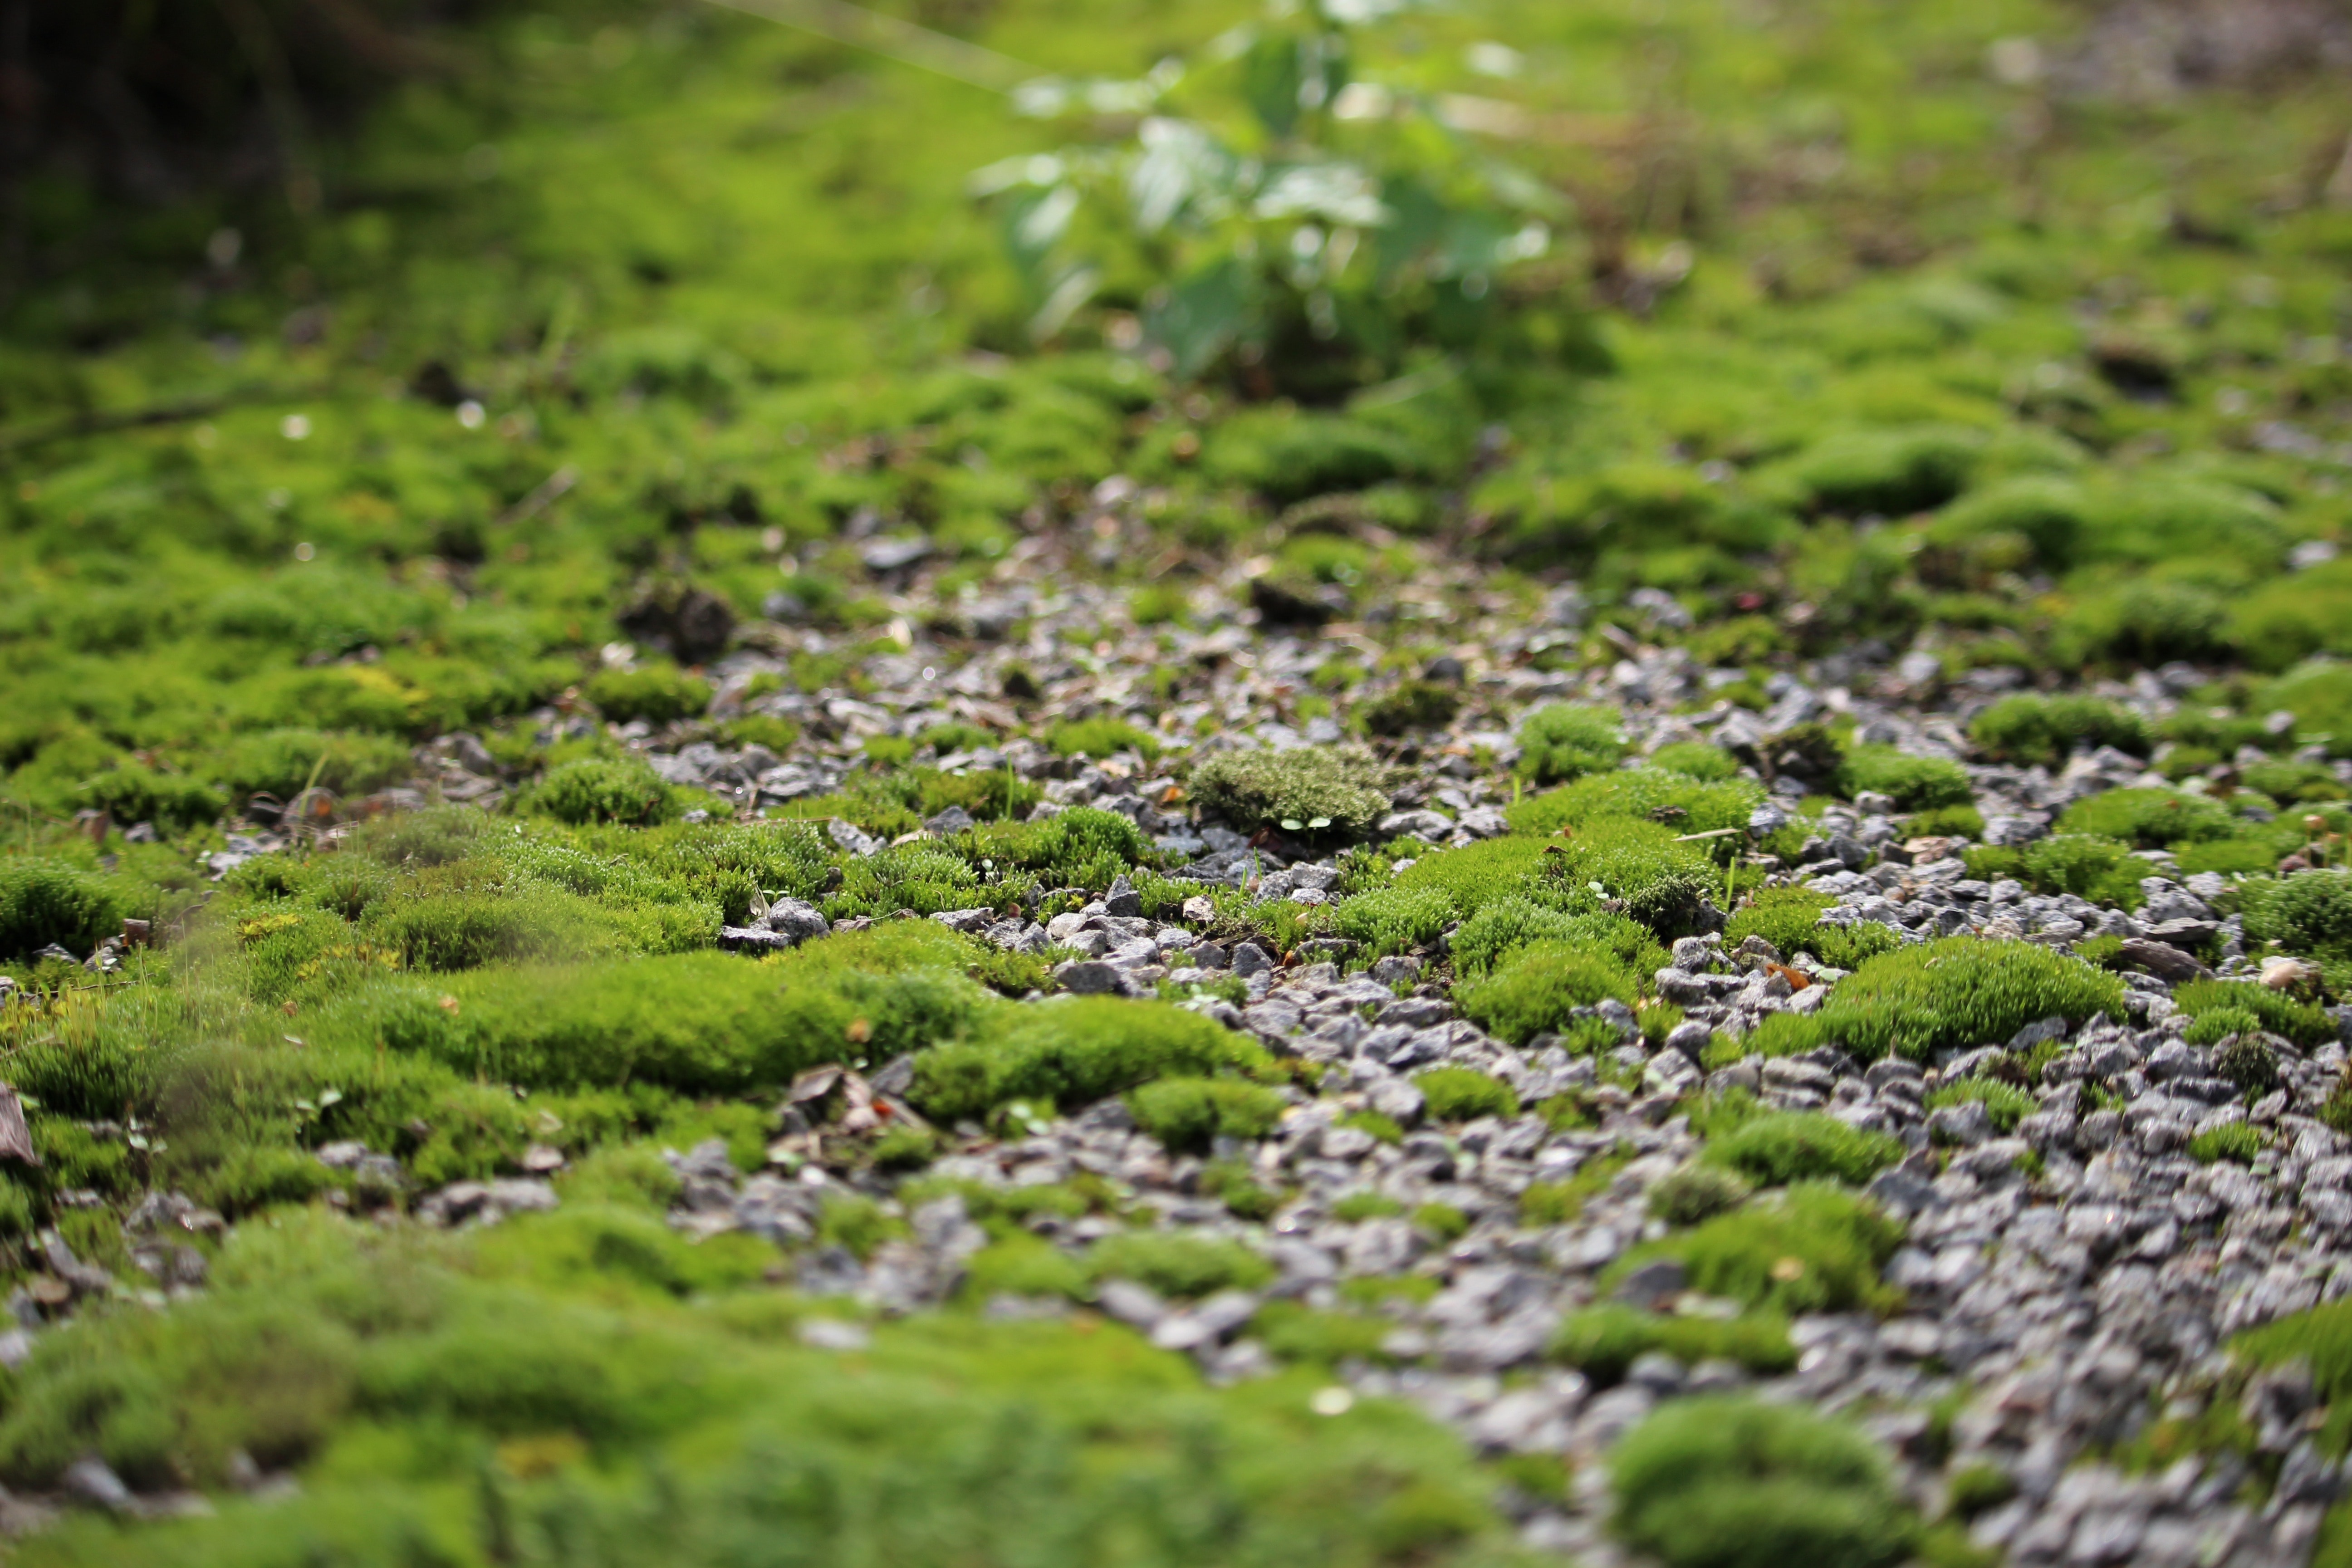 green moss littered among ground